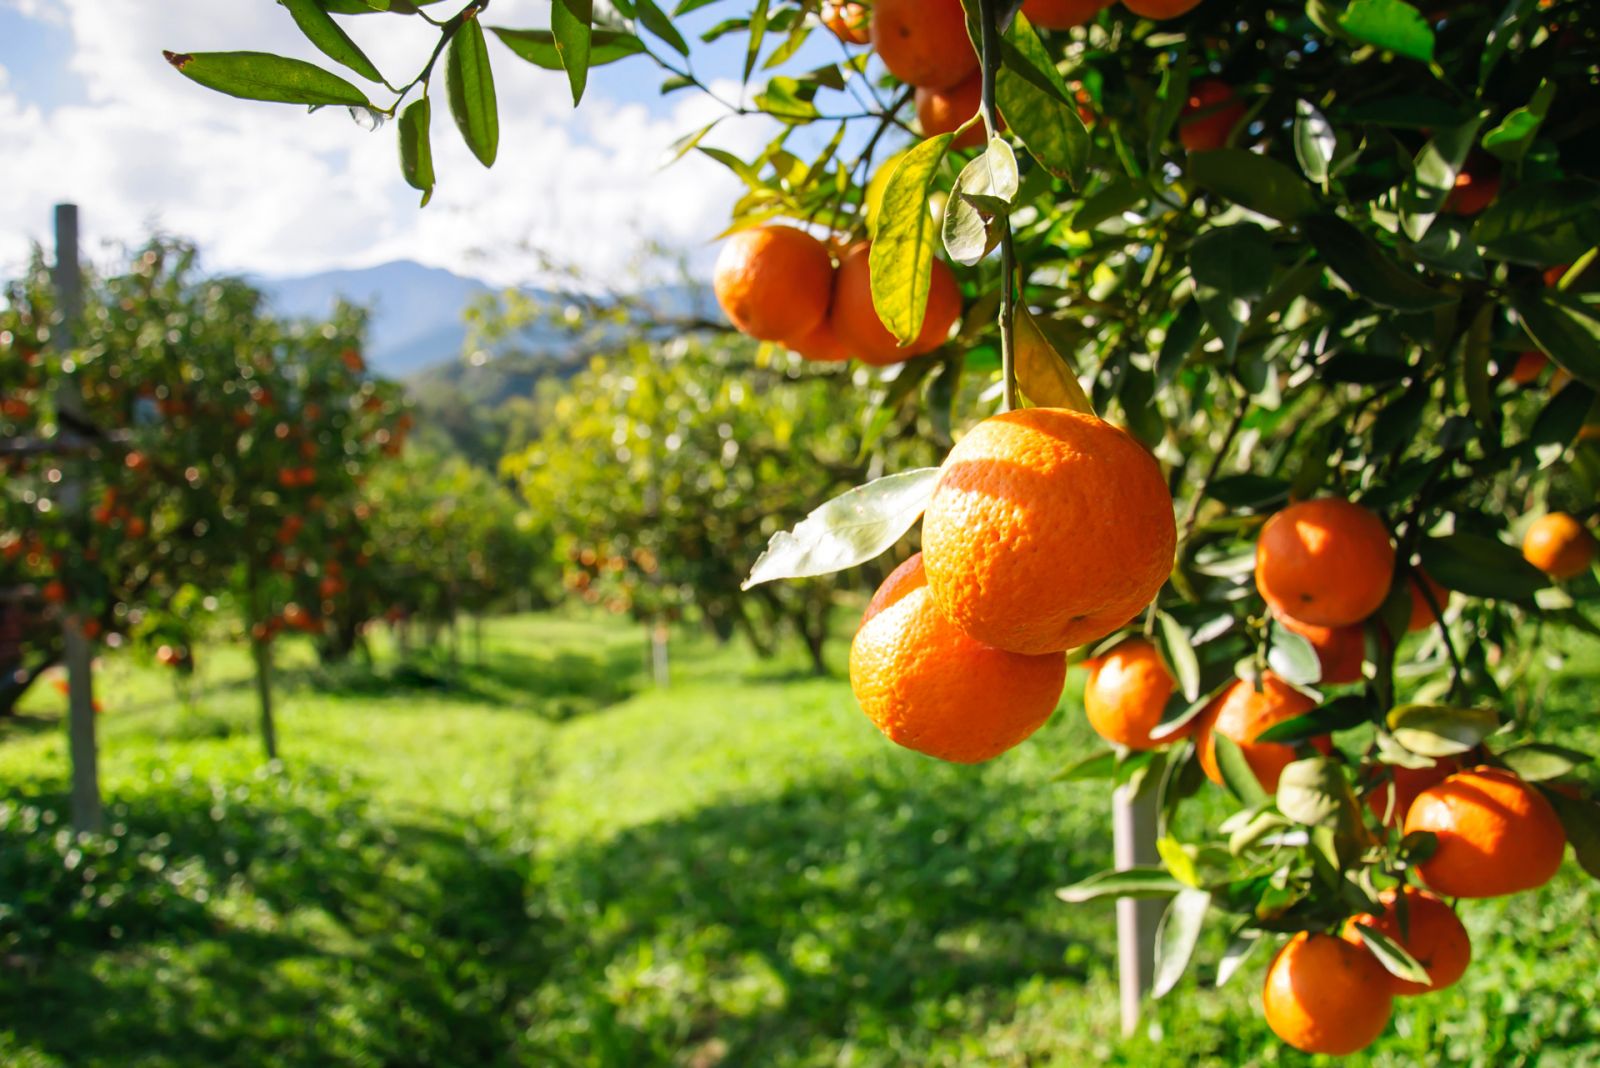 Sự thiếu hụt chất dinh dưỡng trong cây ăn quả